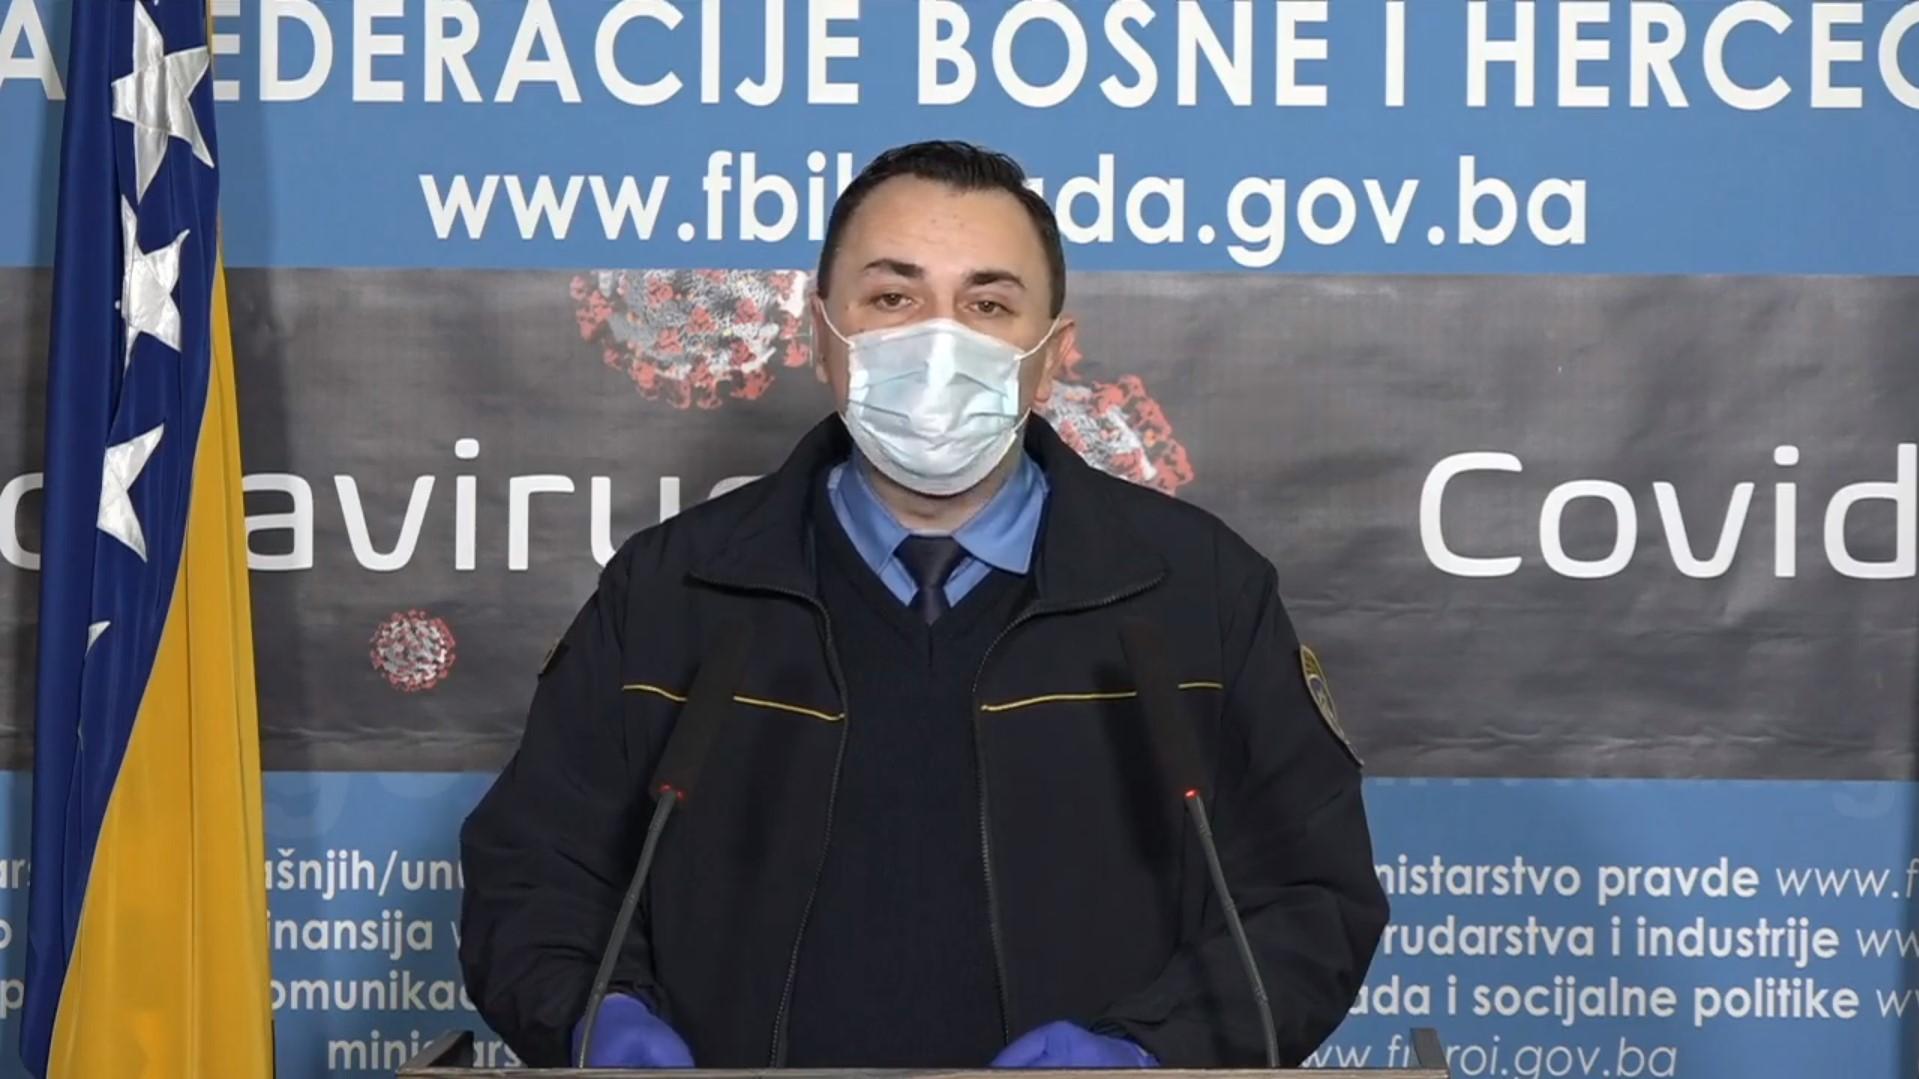 Ajdinović: Inspektori neće dopustiti nepoštivanje odluka - Avaz